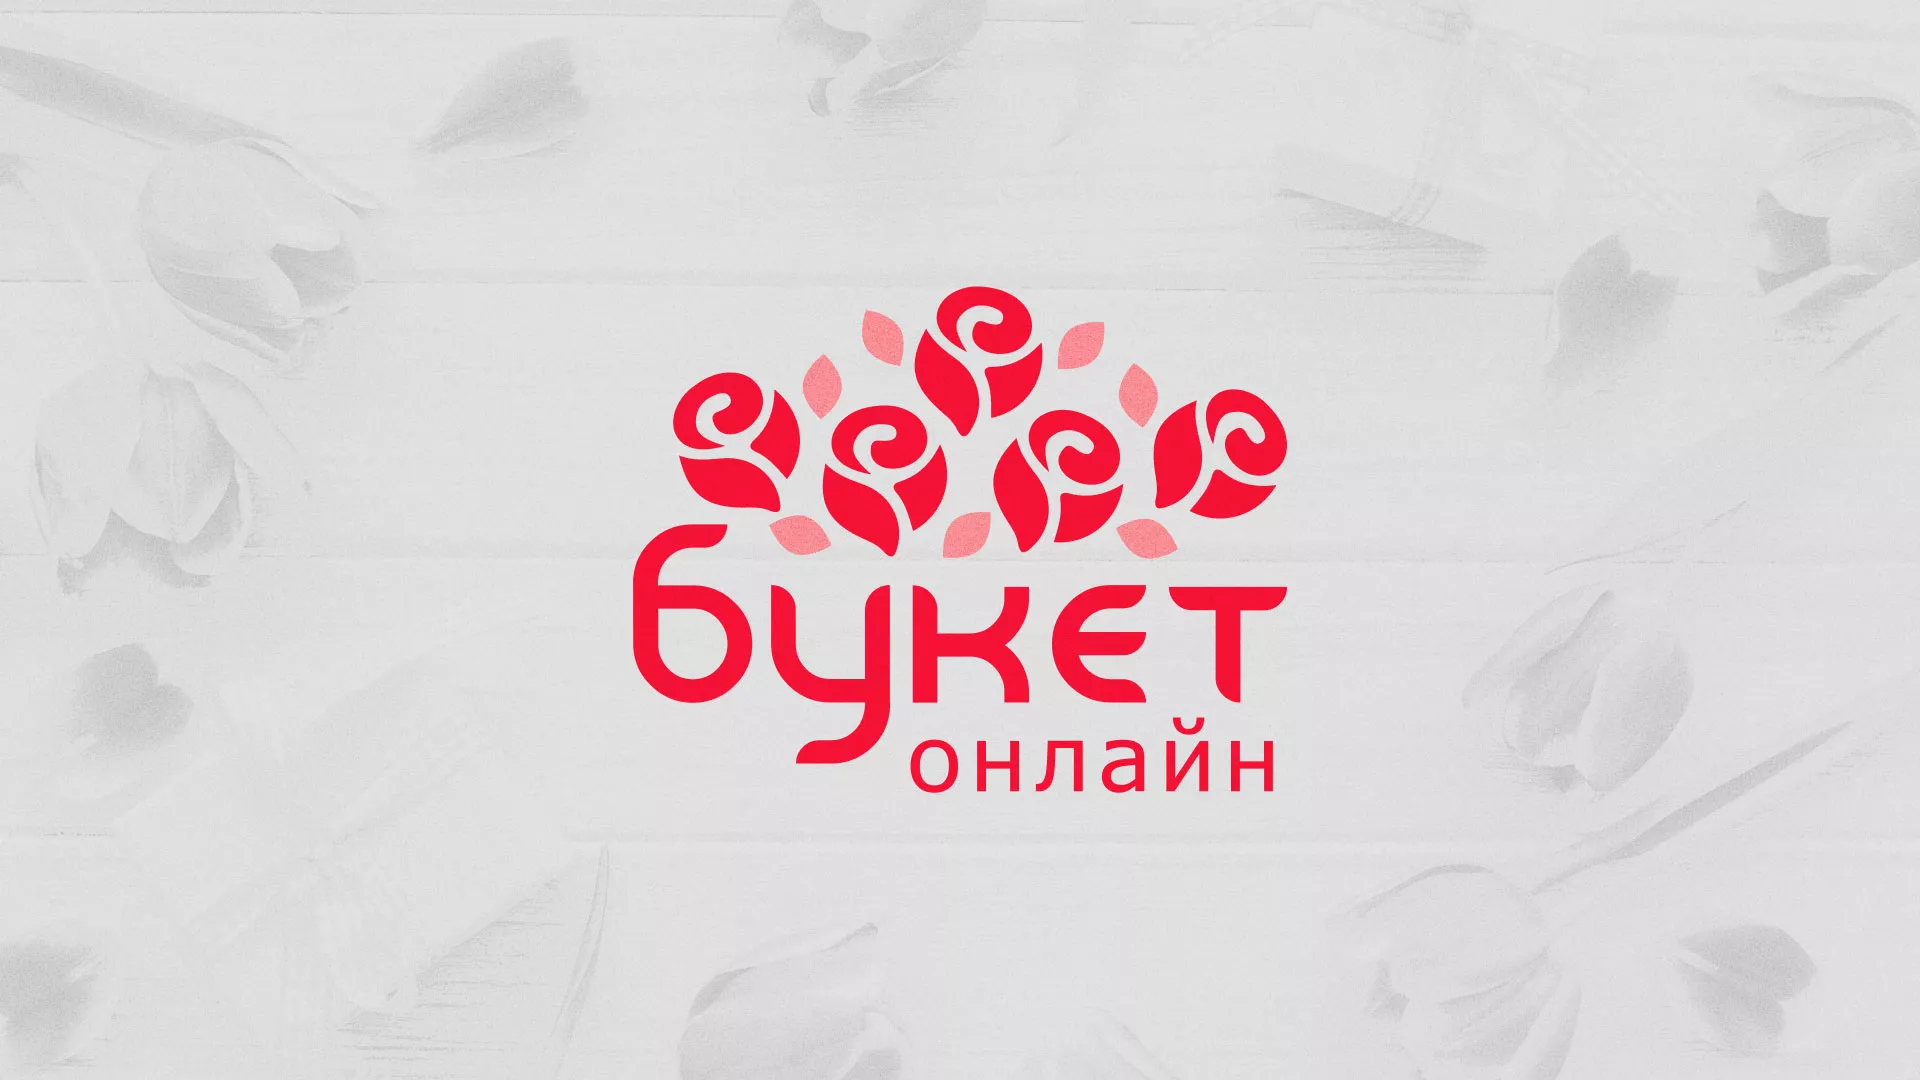 Создание интернет-магазина «Букет-онлайн» по цветам в Якутске